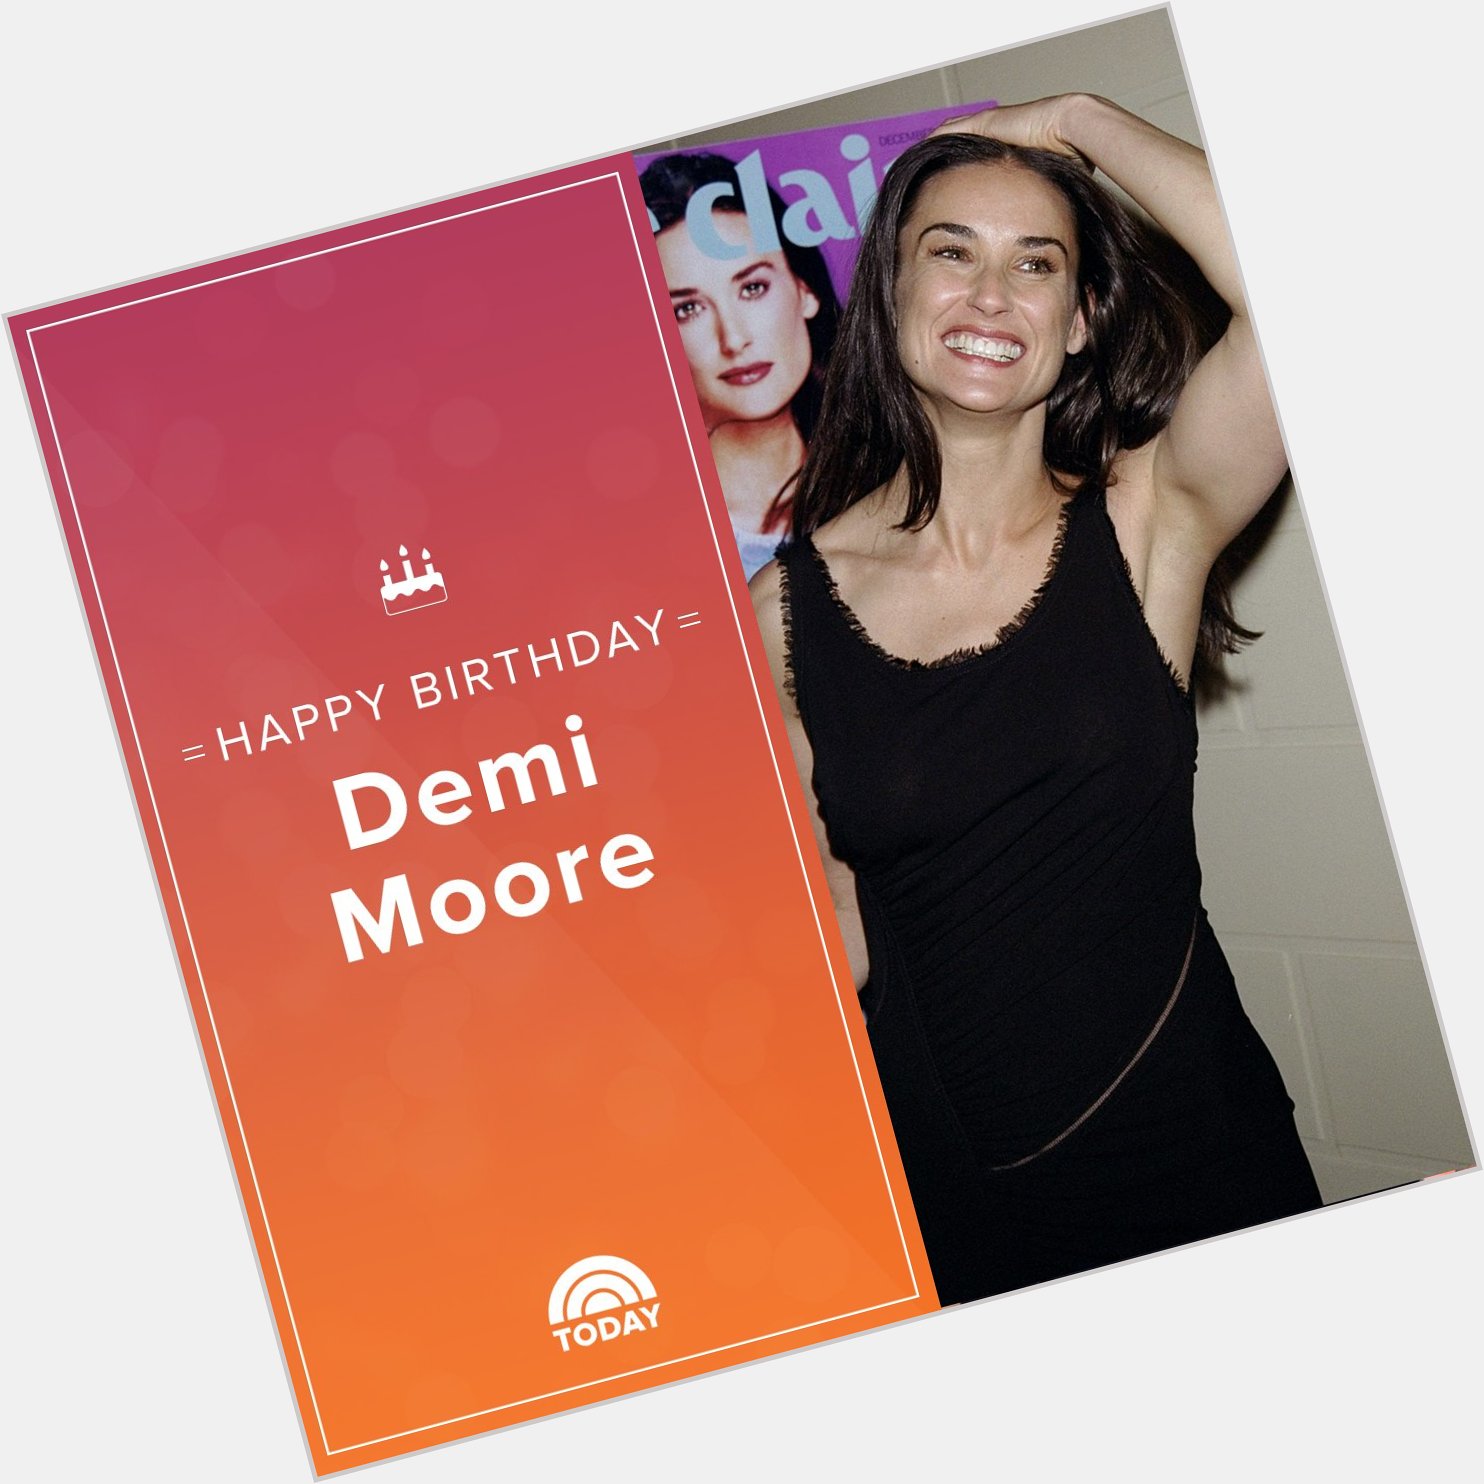 Happy birthday, Demi Moore!  